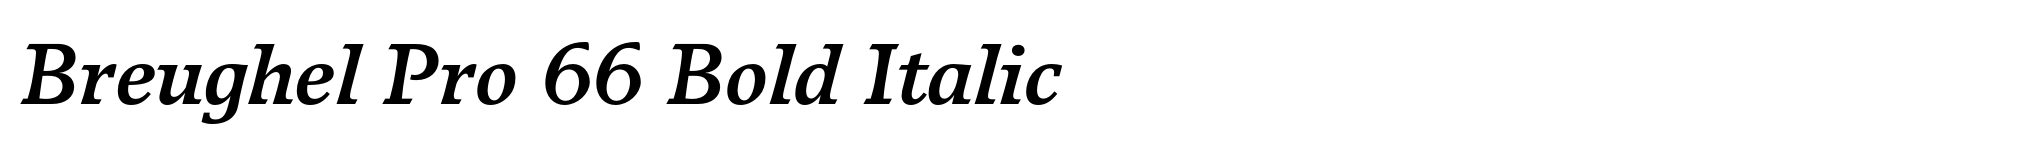 Breughel Pro 66 Bold Italic image